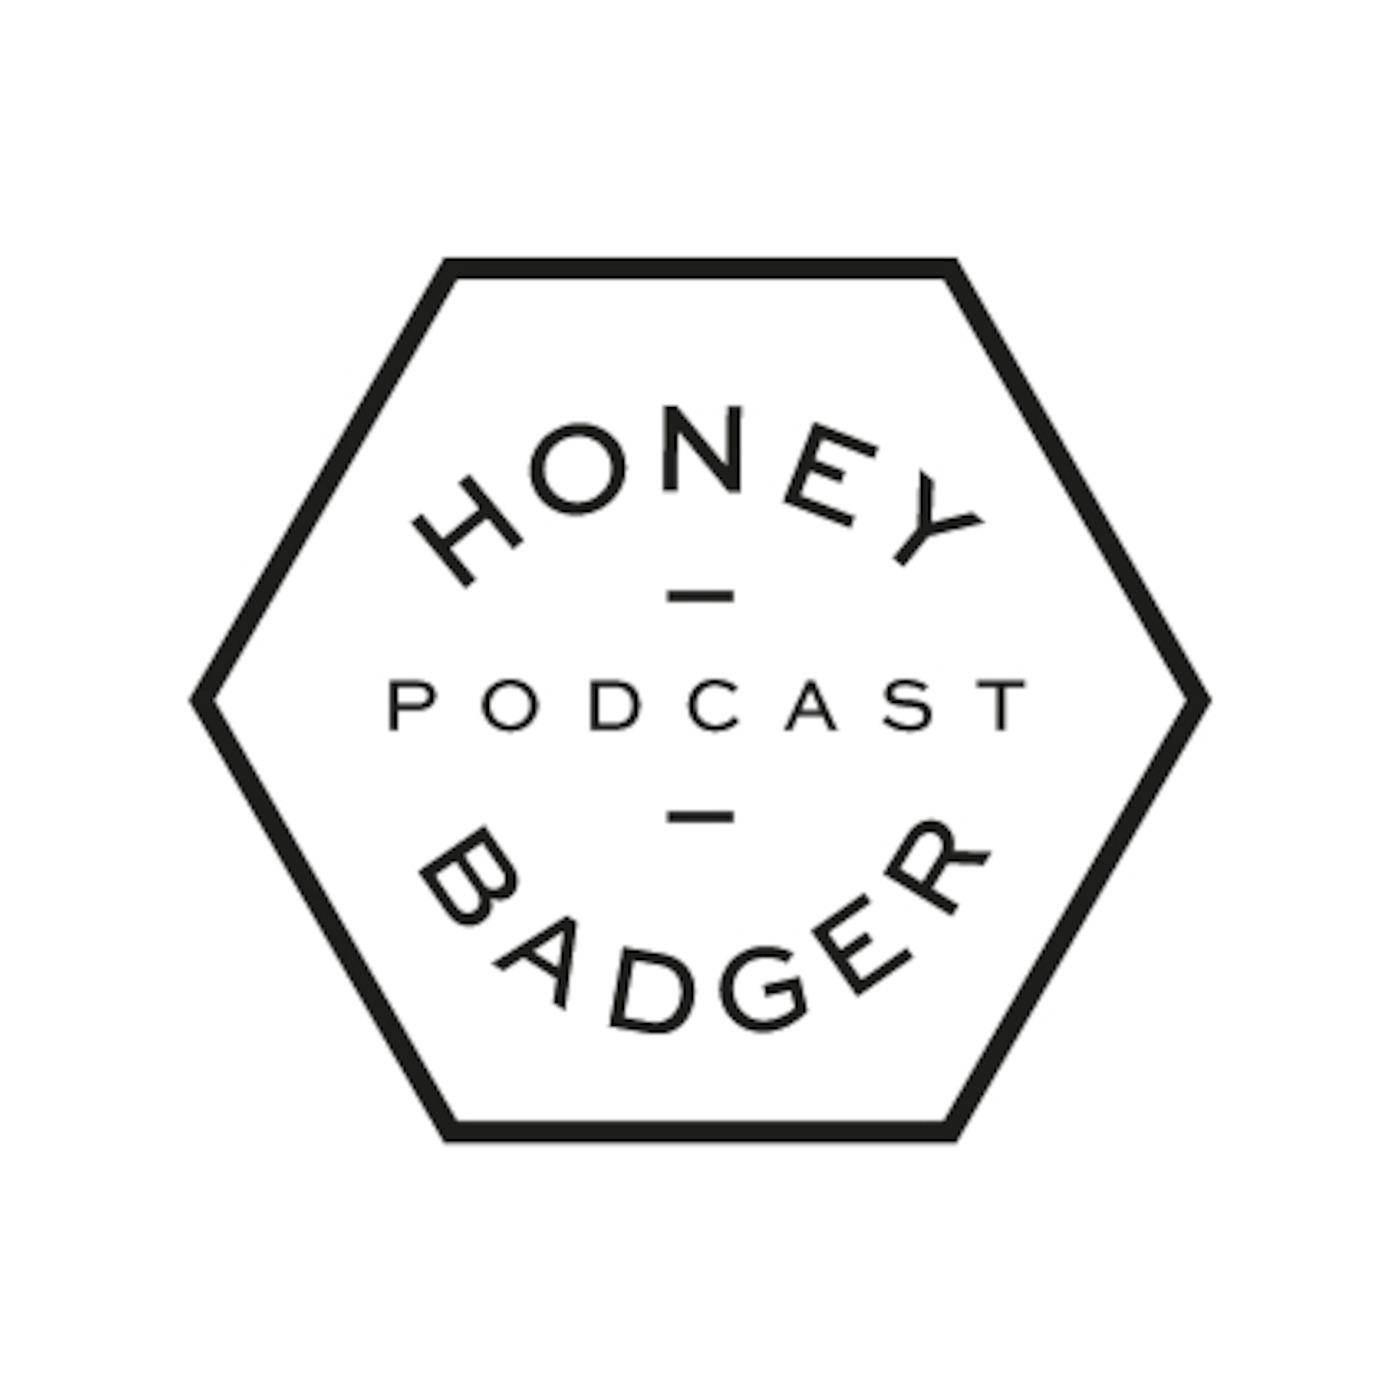 Honey Badger Podcast